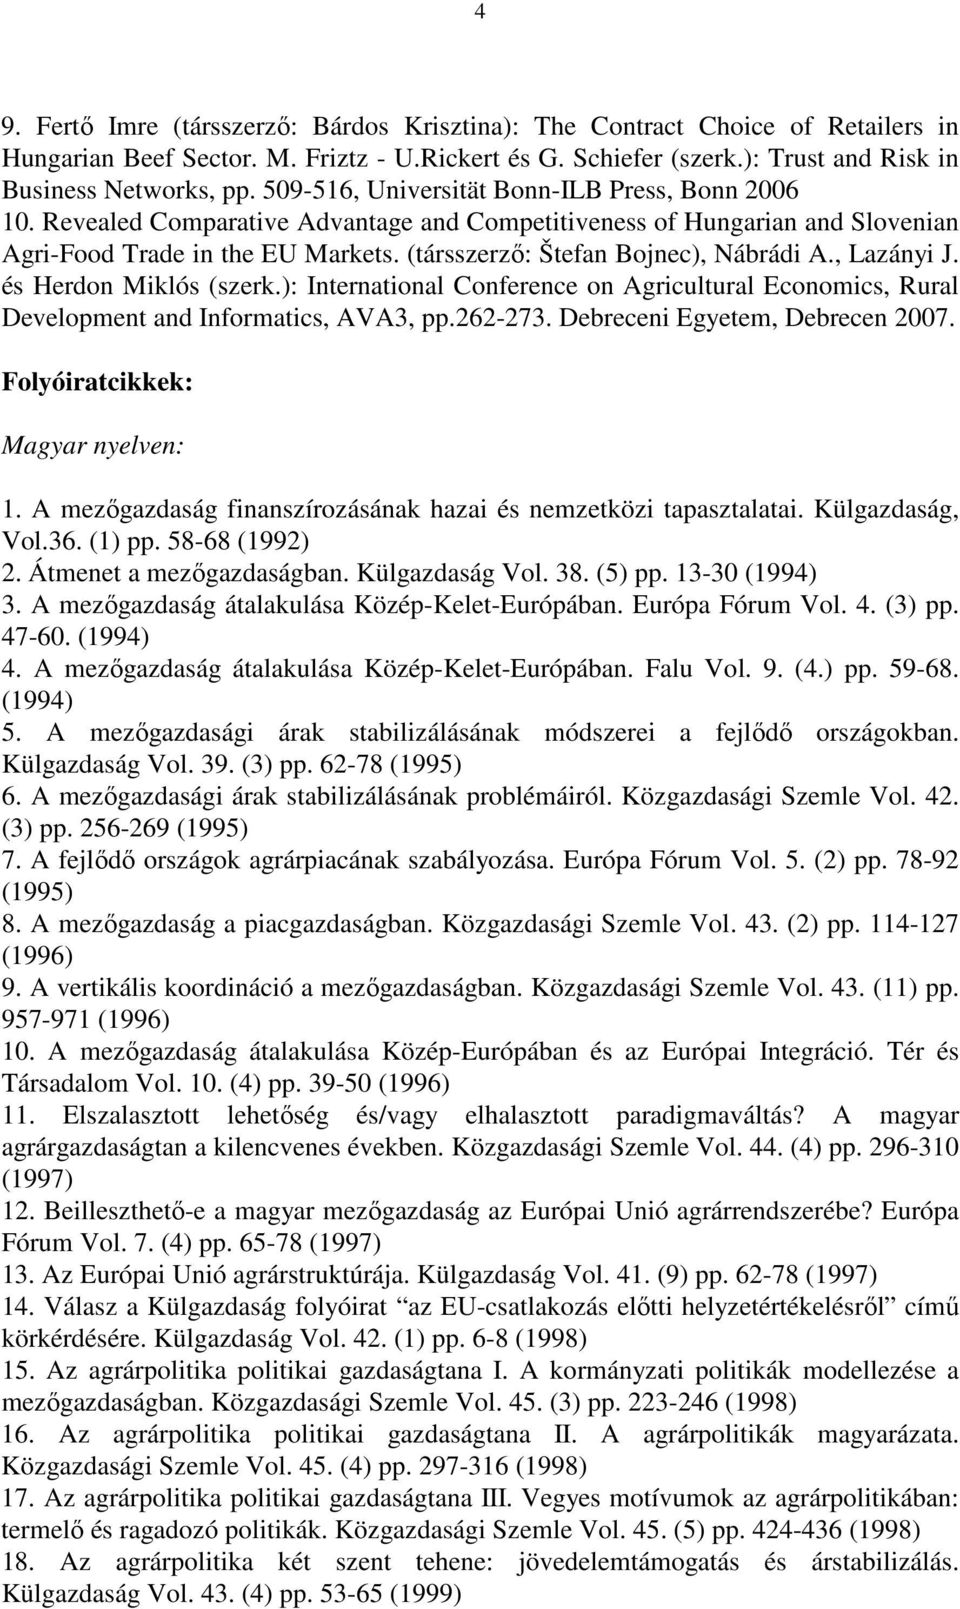 (társszerzı: Štefan Bojnec), Nábrádi A., Lazányi J. és Herdon Miklós (szerk.): International Conference on Agricultural Economics, Rural Development and Informatics, AVA3, pp.262-273.